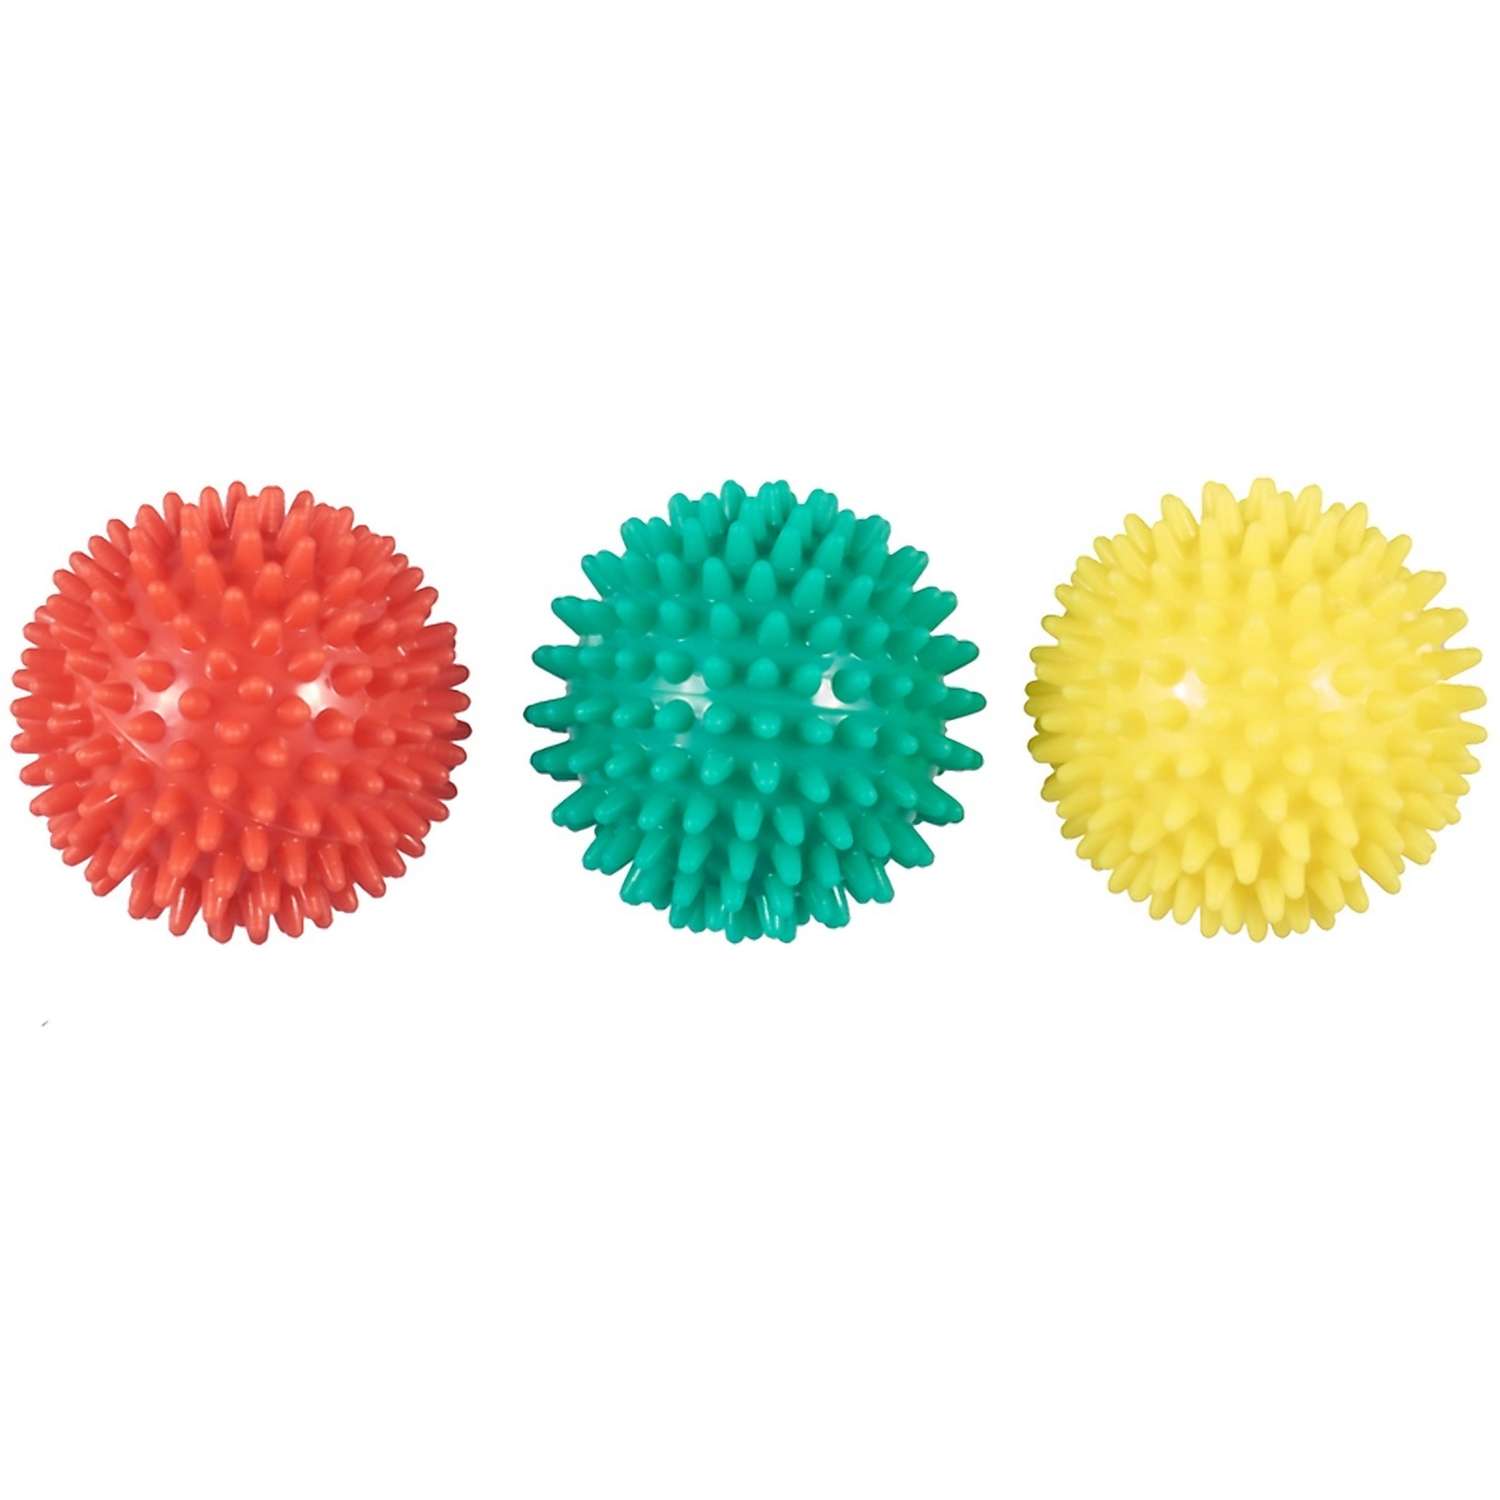 Мяч массажный KINERAPY 3 шт 6 см красный желтый и зеленый - фото 5